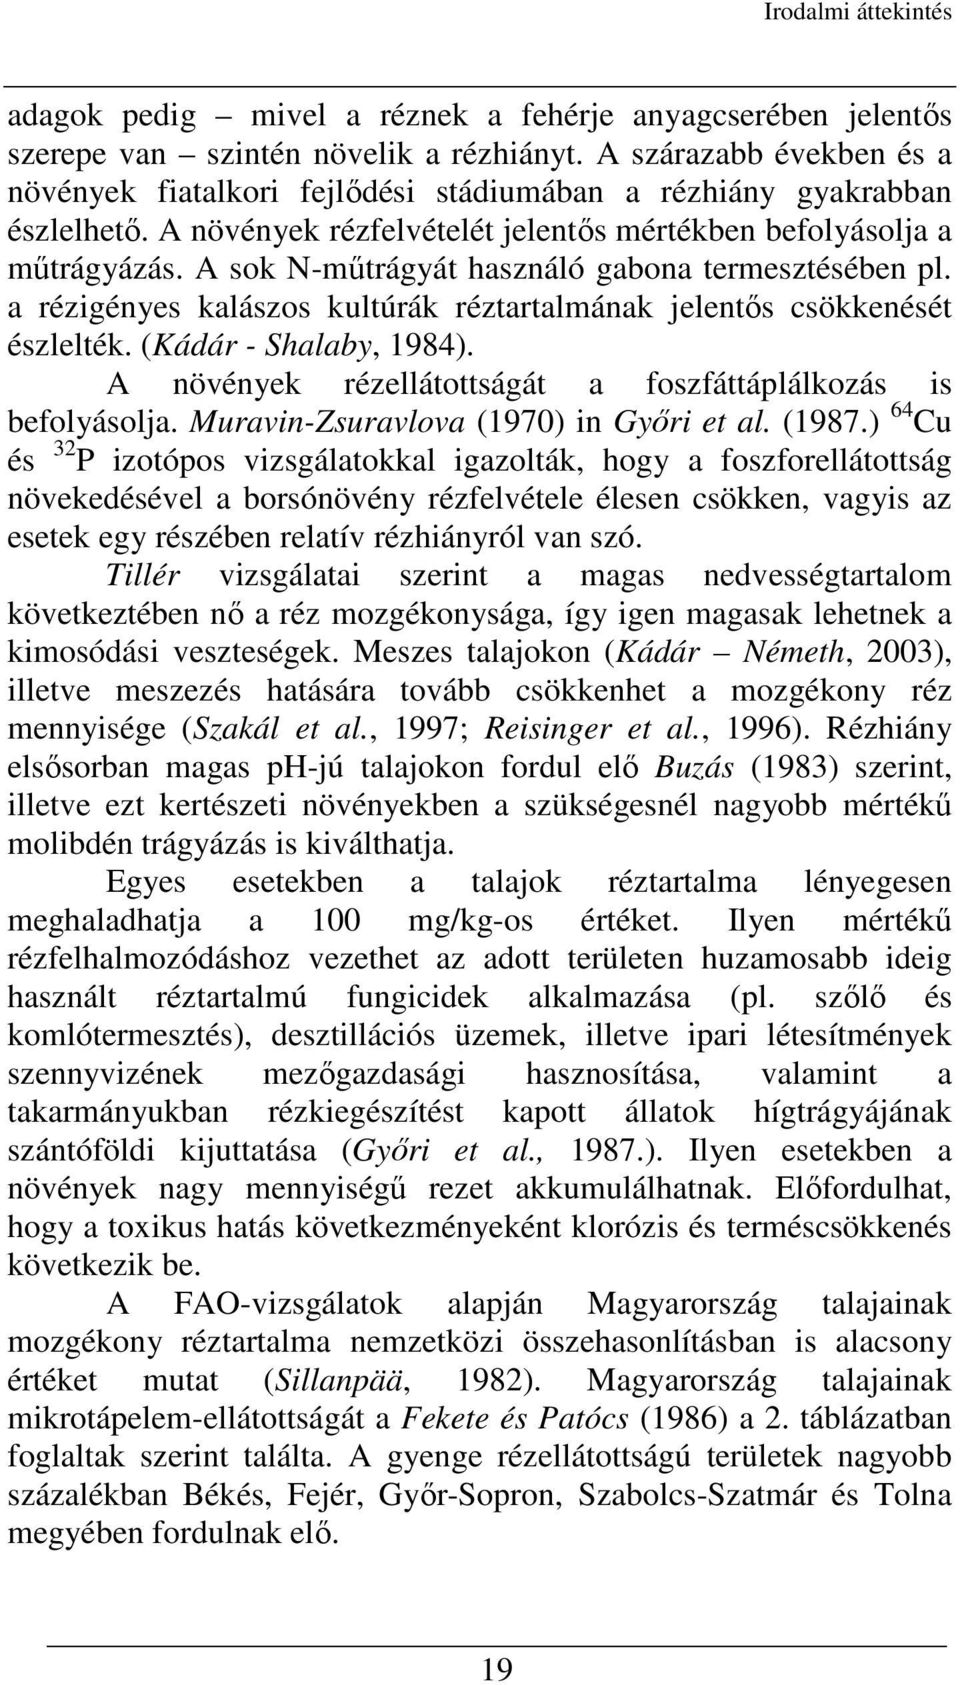 A sok N-mőtrágyát használó gabona termesztésében pl. a rézigényes kalászos kultúrák réztartalmának jelentıs csökkenését észlelték. (Kádár - Shalaby, 1984).